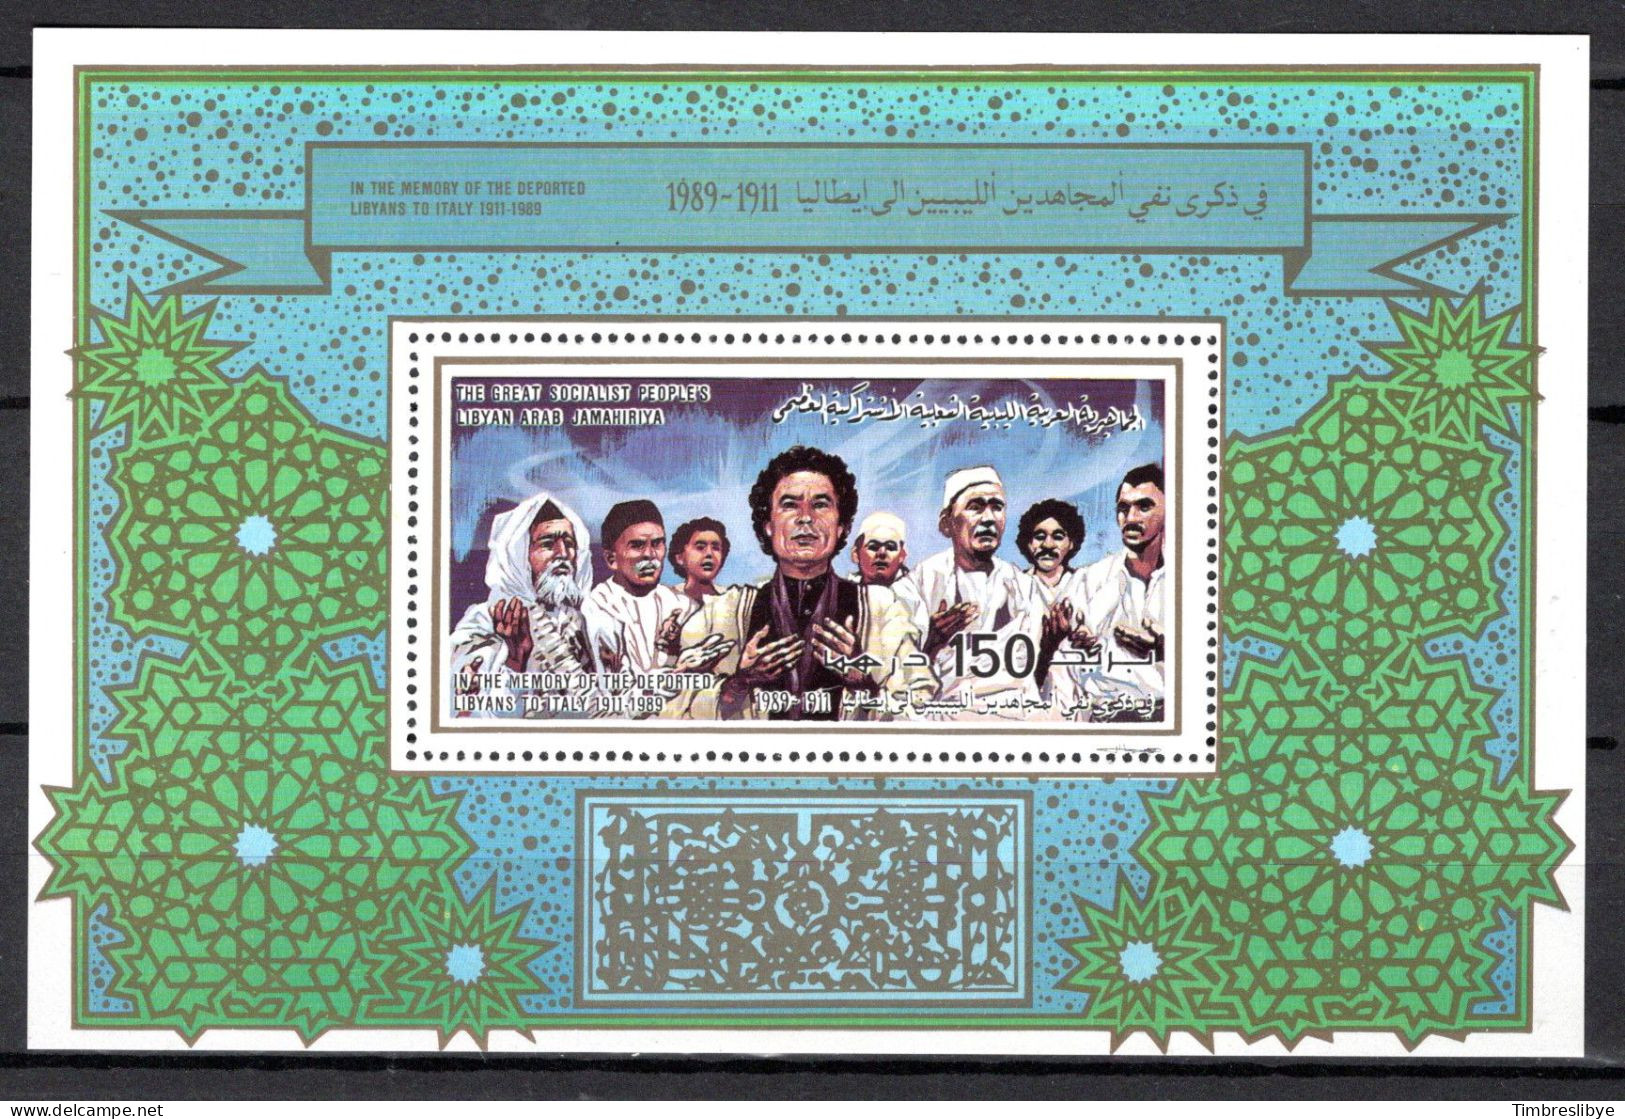 LIBYA 26.10.1989; Journée De Commémoration Des Déportés; Michel-Bloc-N° 119A; MNH, Neuf ** - Libië